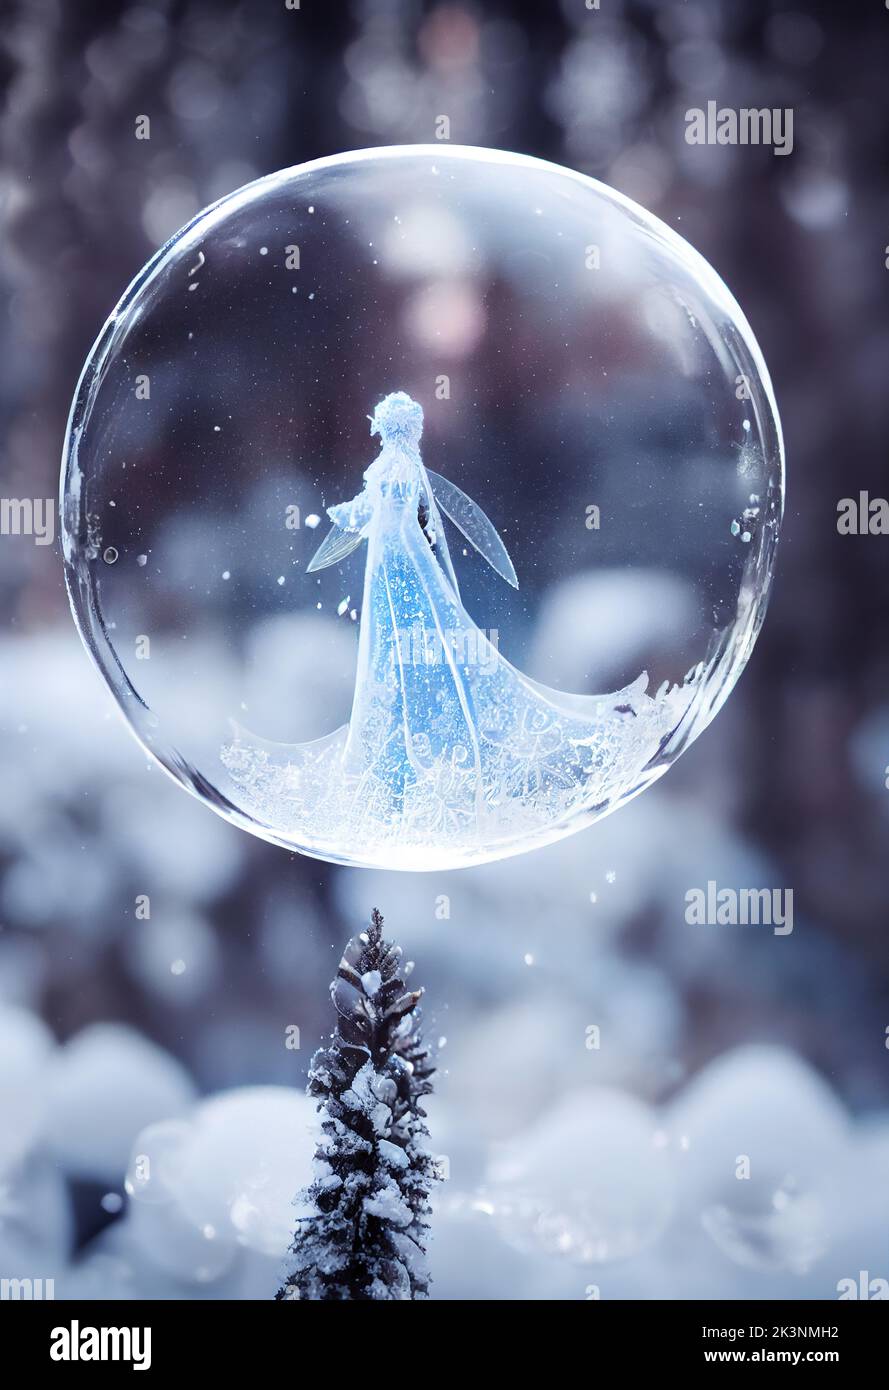 Eine vertikale Aufnahme einer schönen Fee in einer gefrorenen Blase Stockfoto